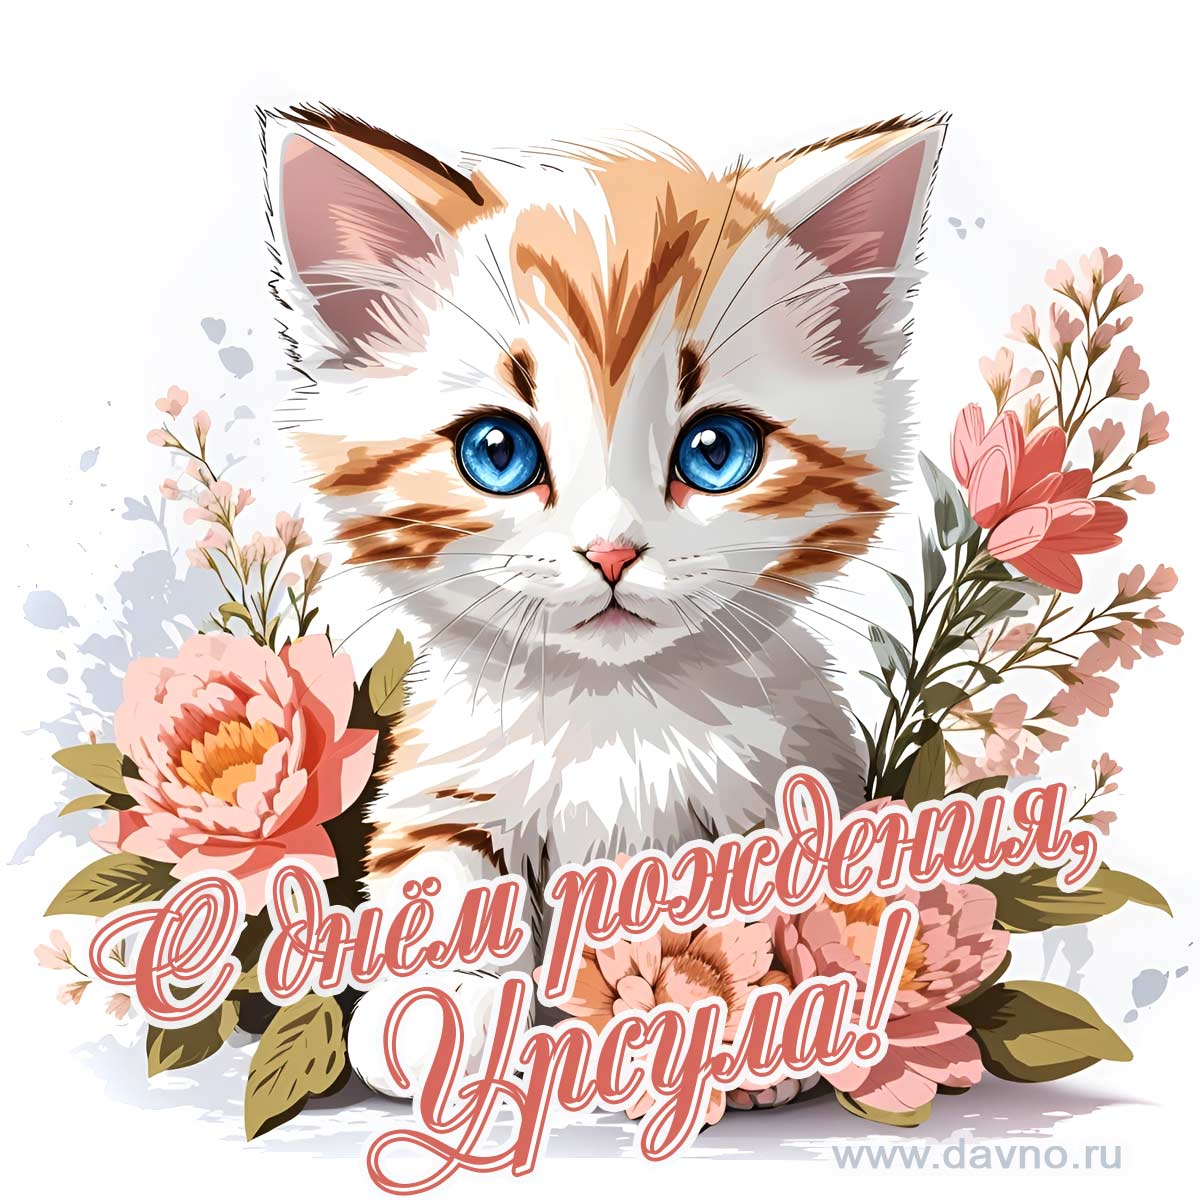 Новая рисованная поздравительная открытка для Урсулы с котёнком